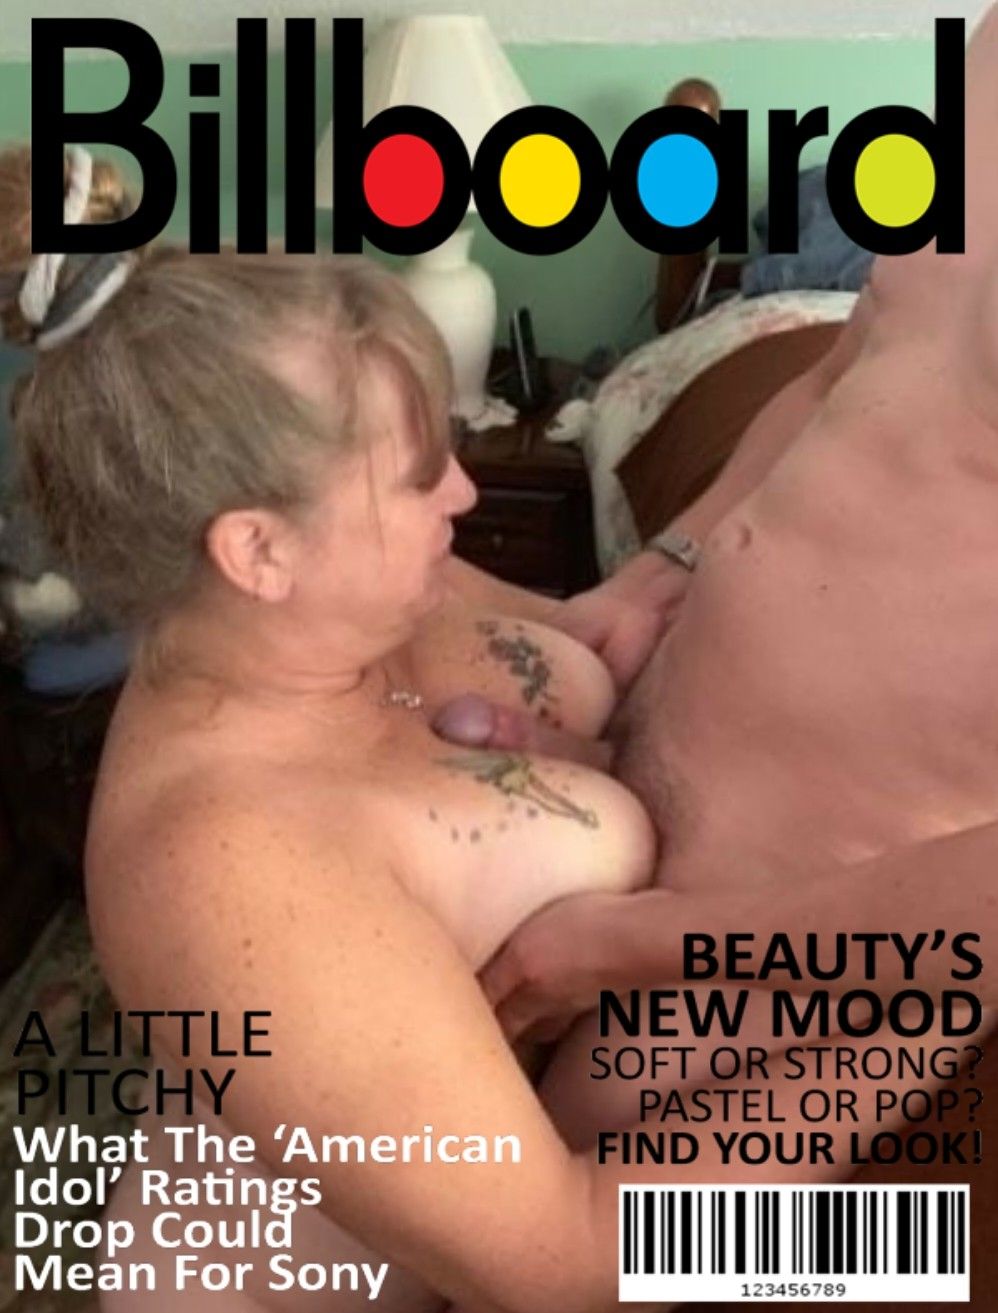 Slut on magazine covers